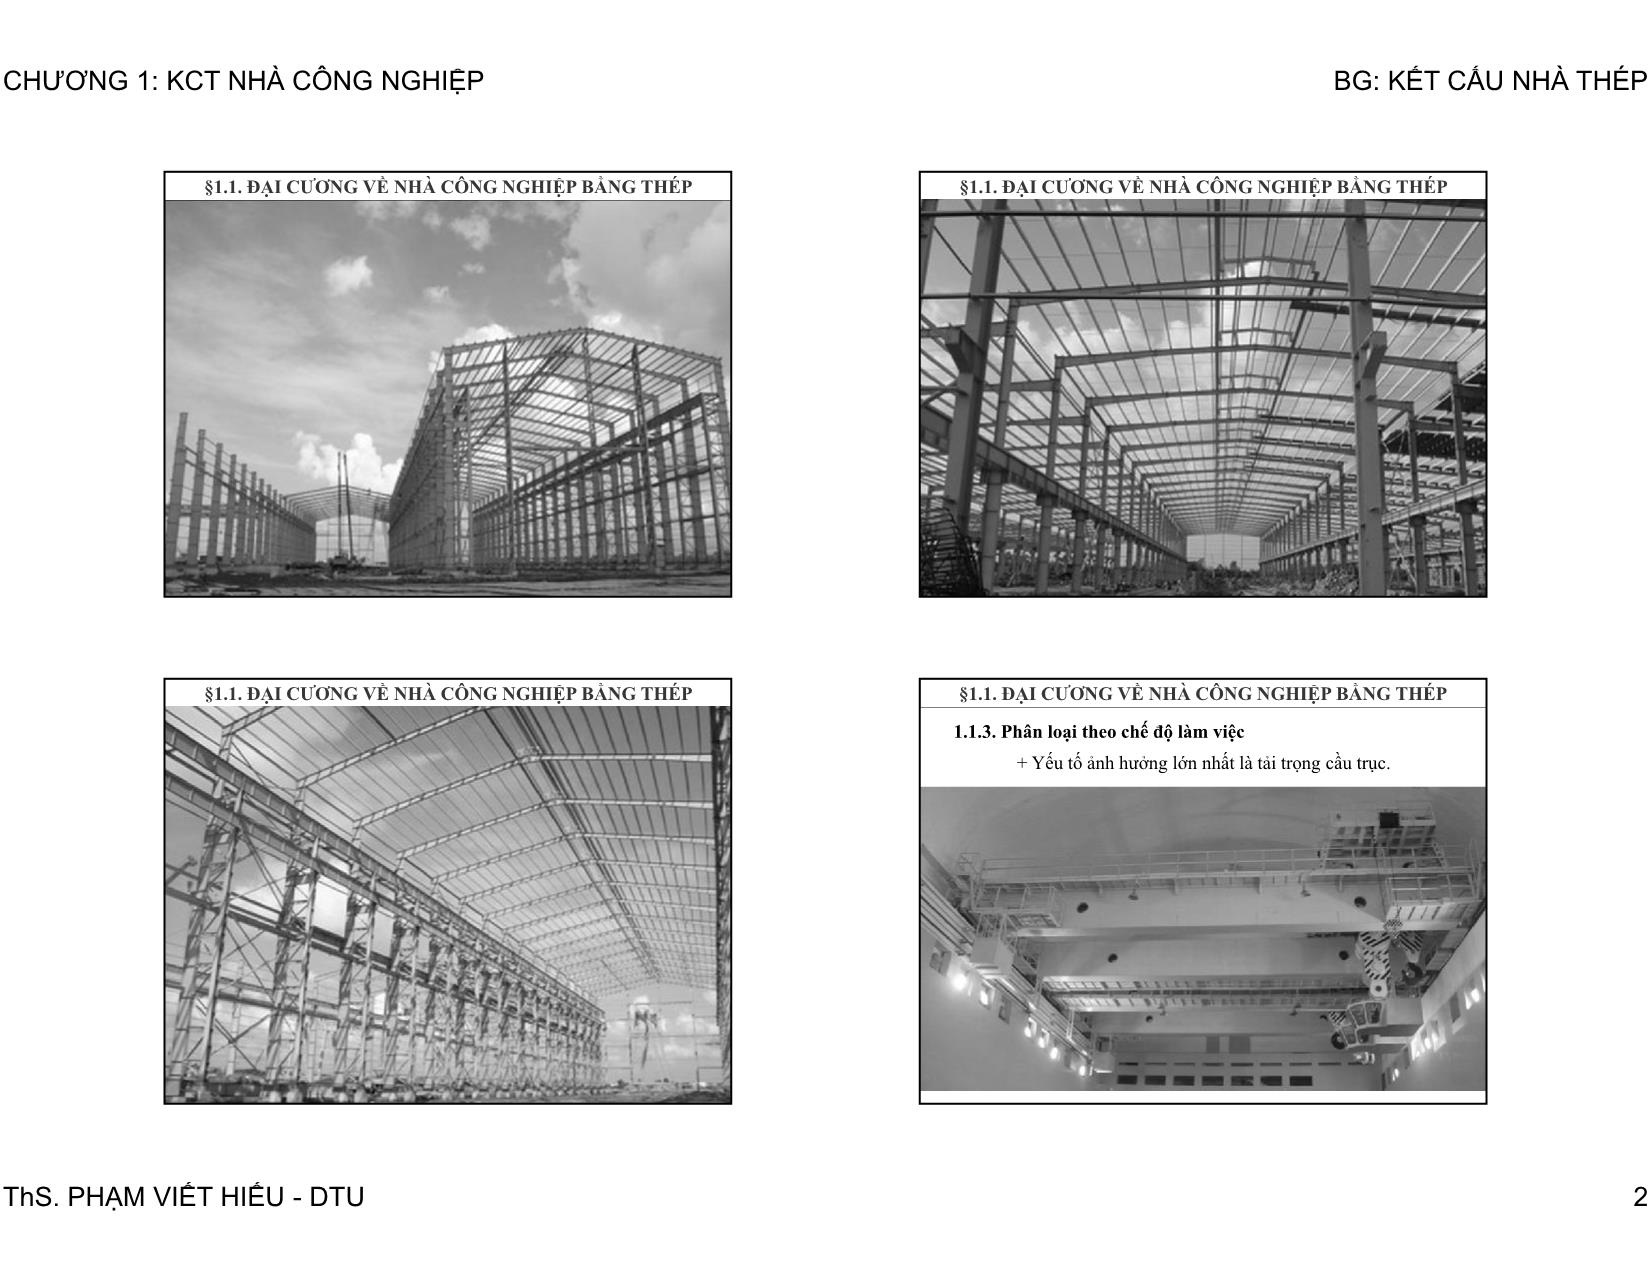 Bài giảng Kết cấu nhà thép - Chương 1: Kết cấu thép nhà công nghiệp một tầng trang 2